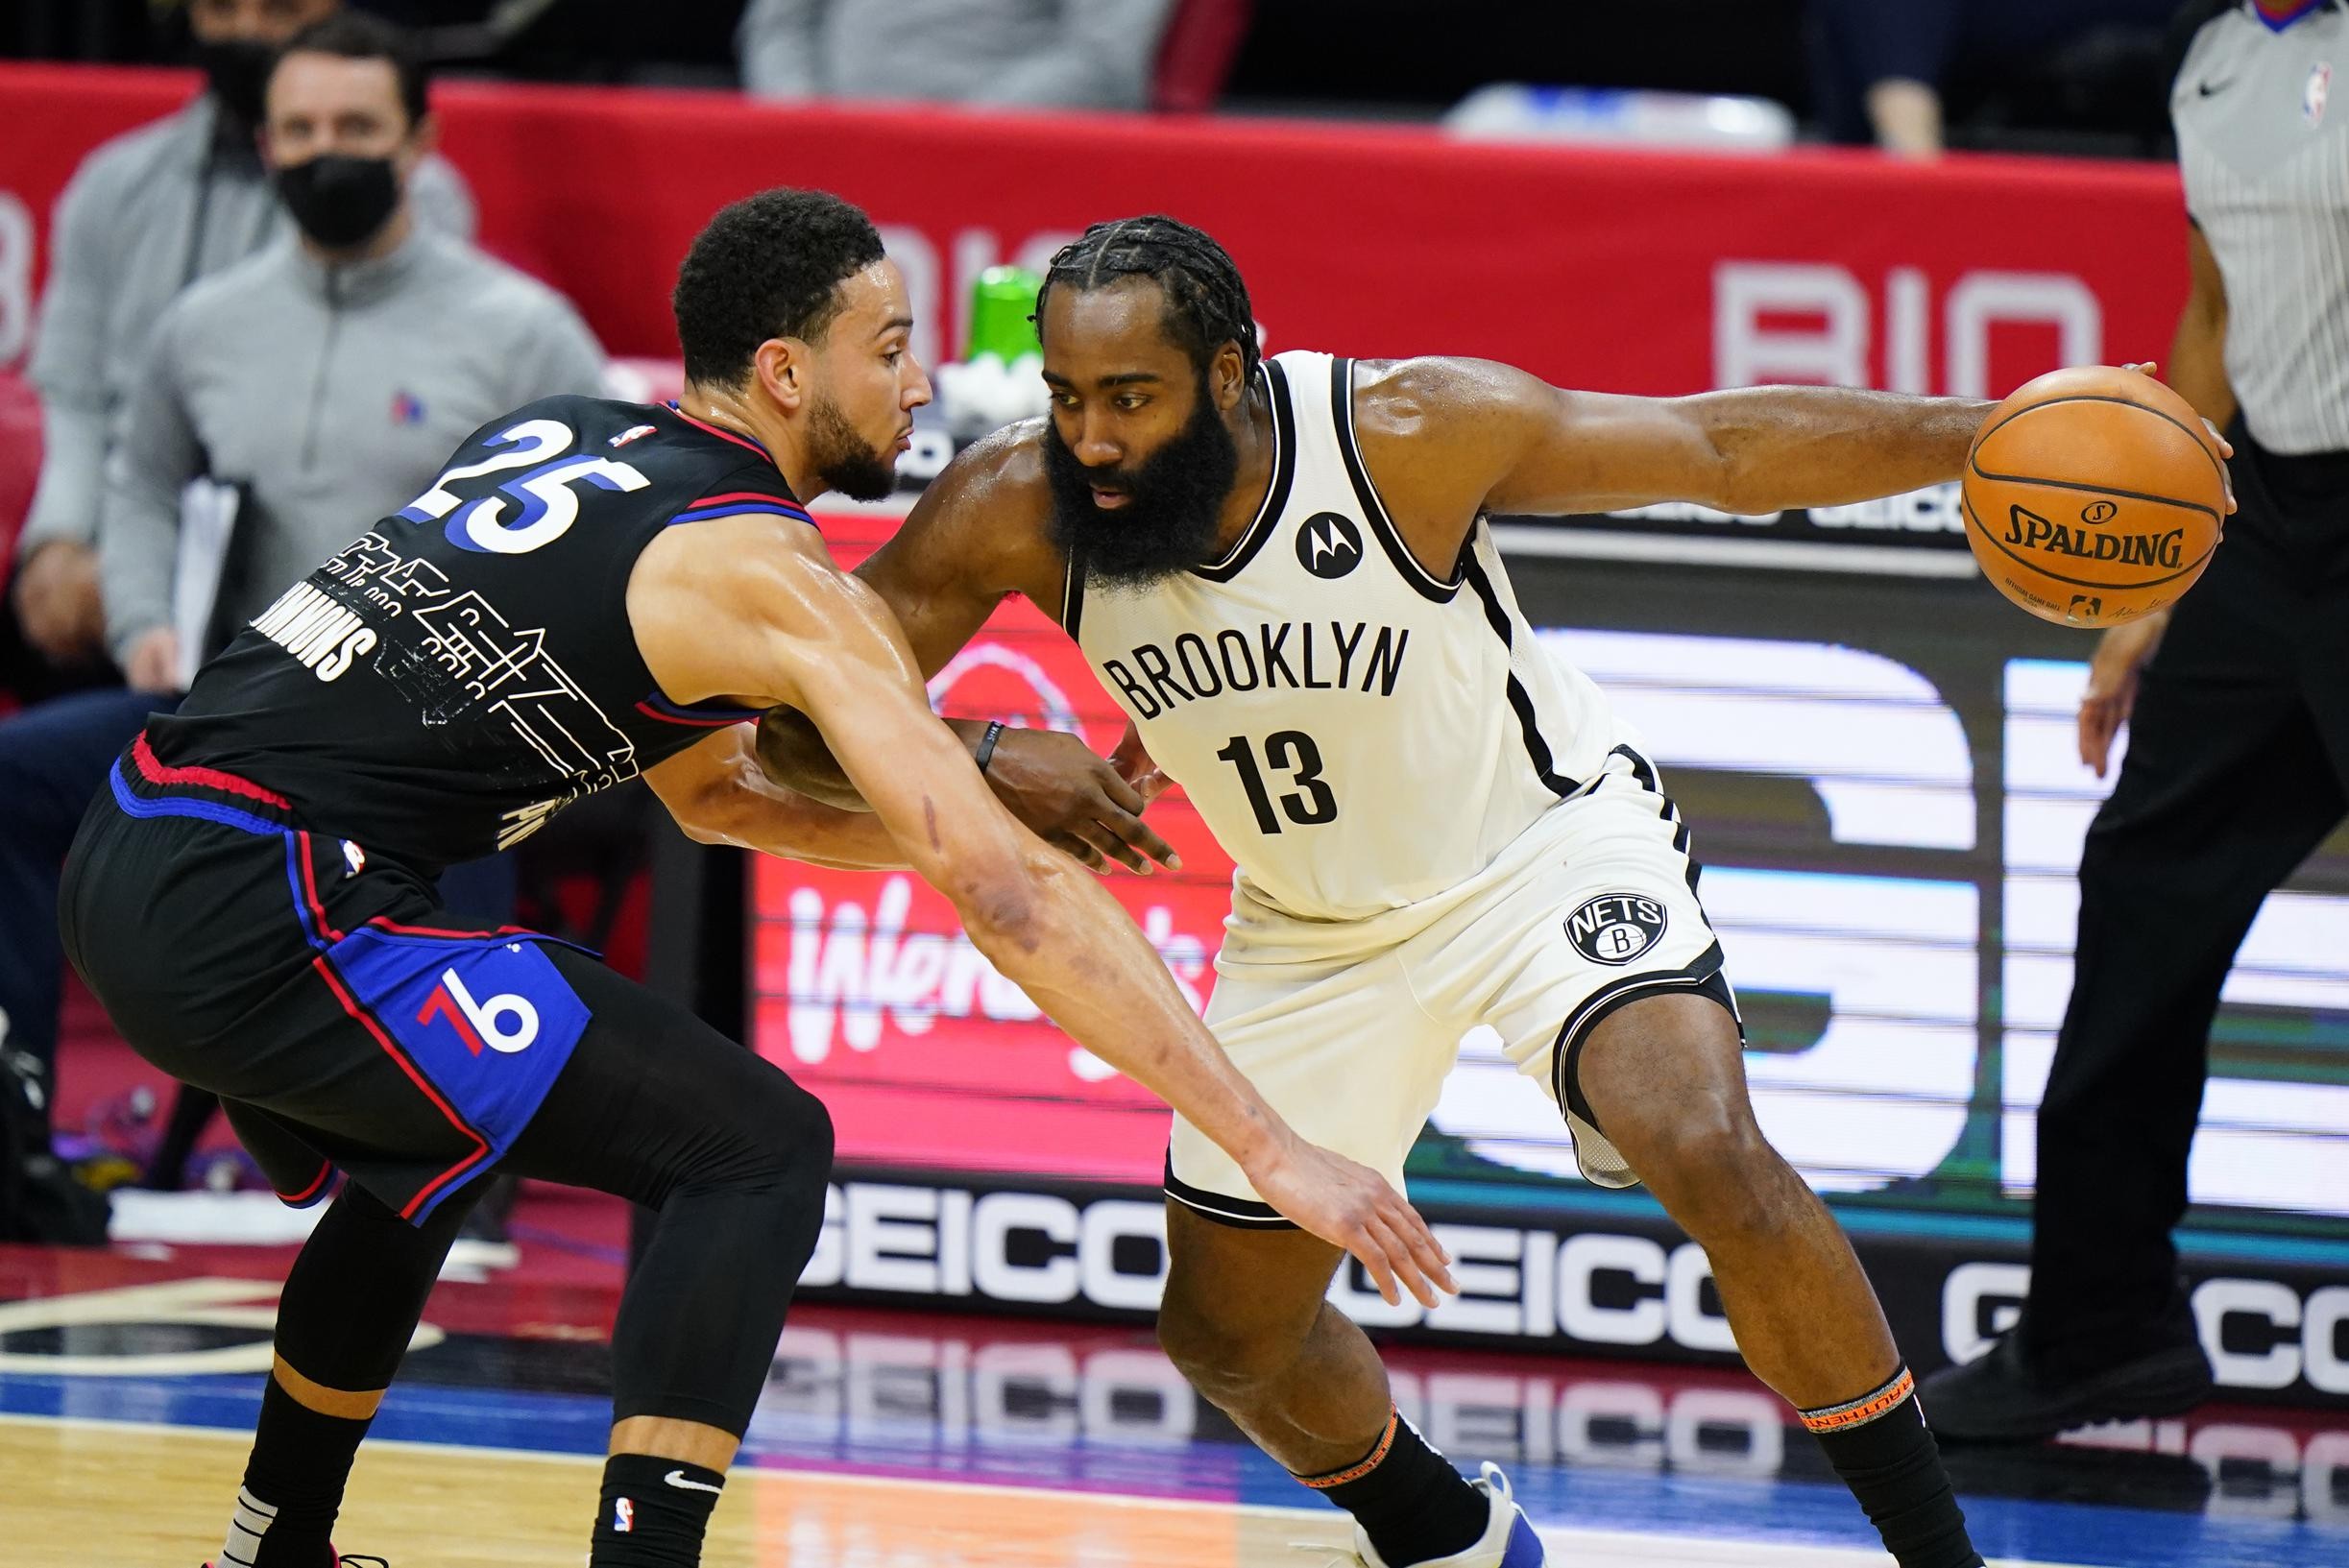 Grote ruildeal in NBA op til: Brooklyn Nets sturen James Harden naar Philadelphia 76ers voor drie spelers, onder wie Ben Simmons